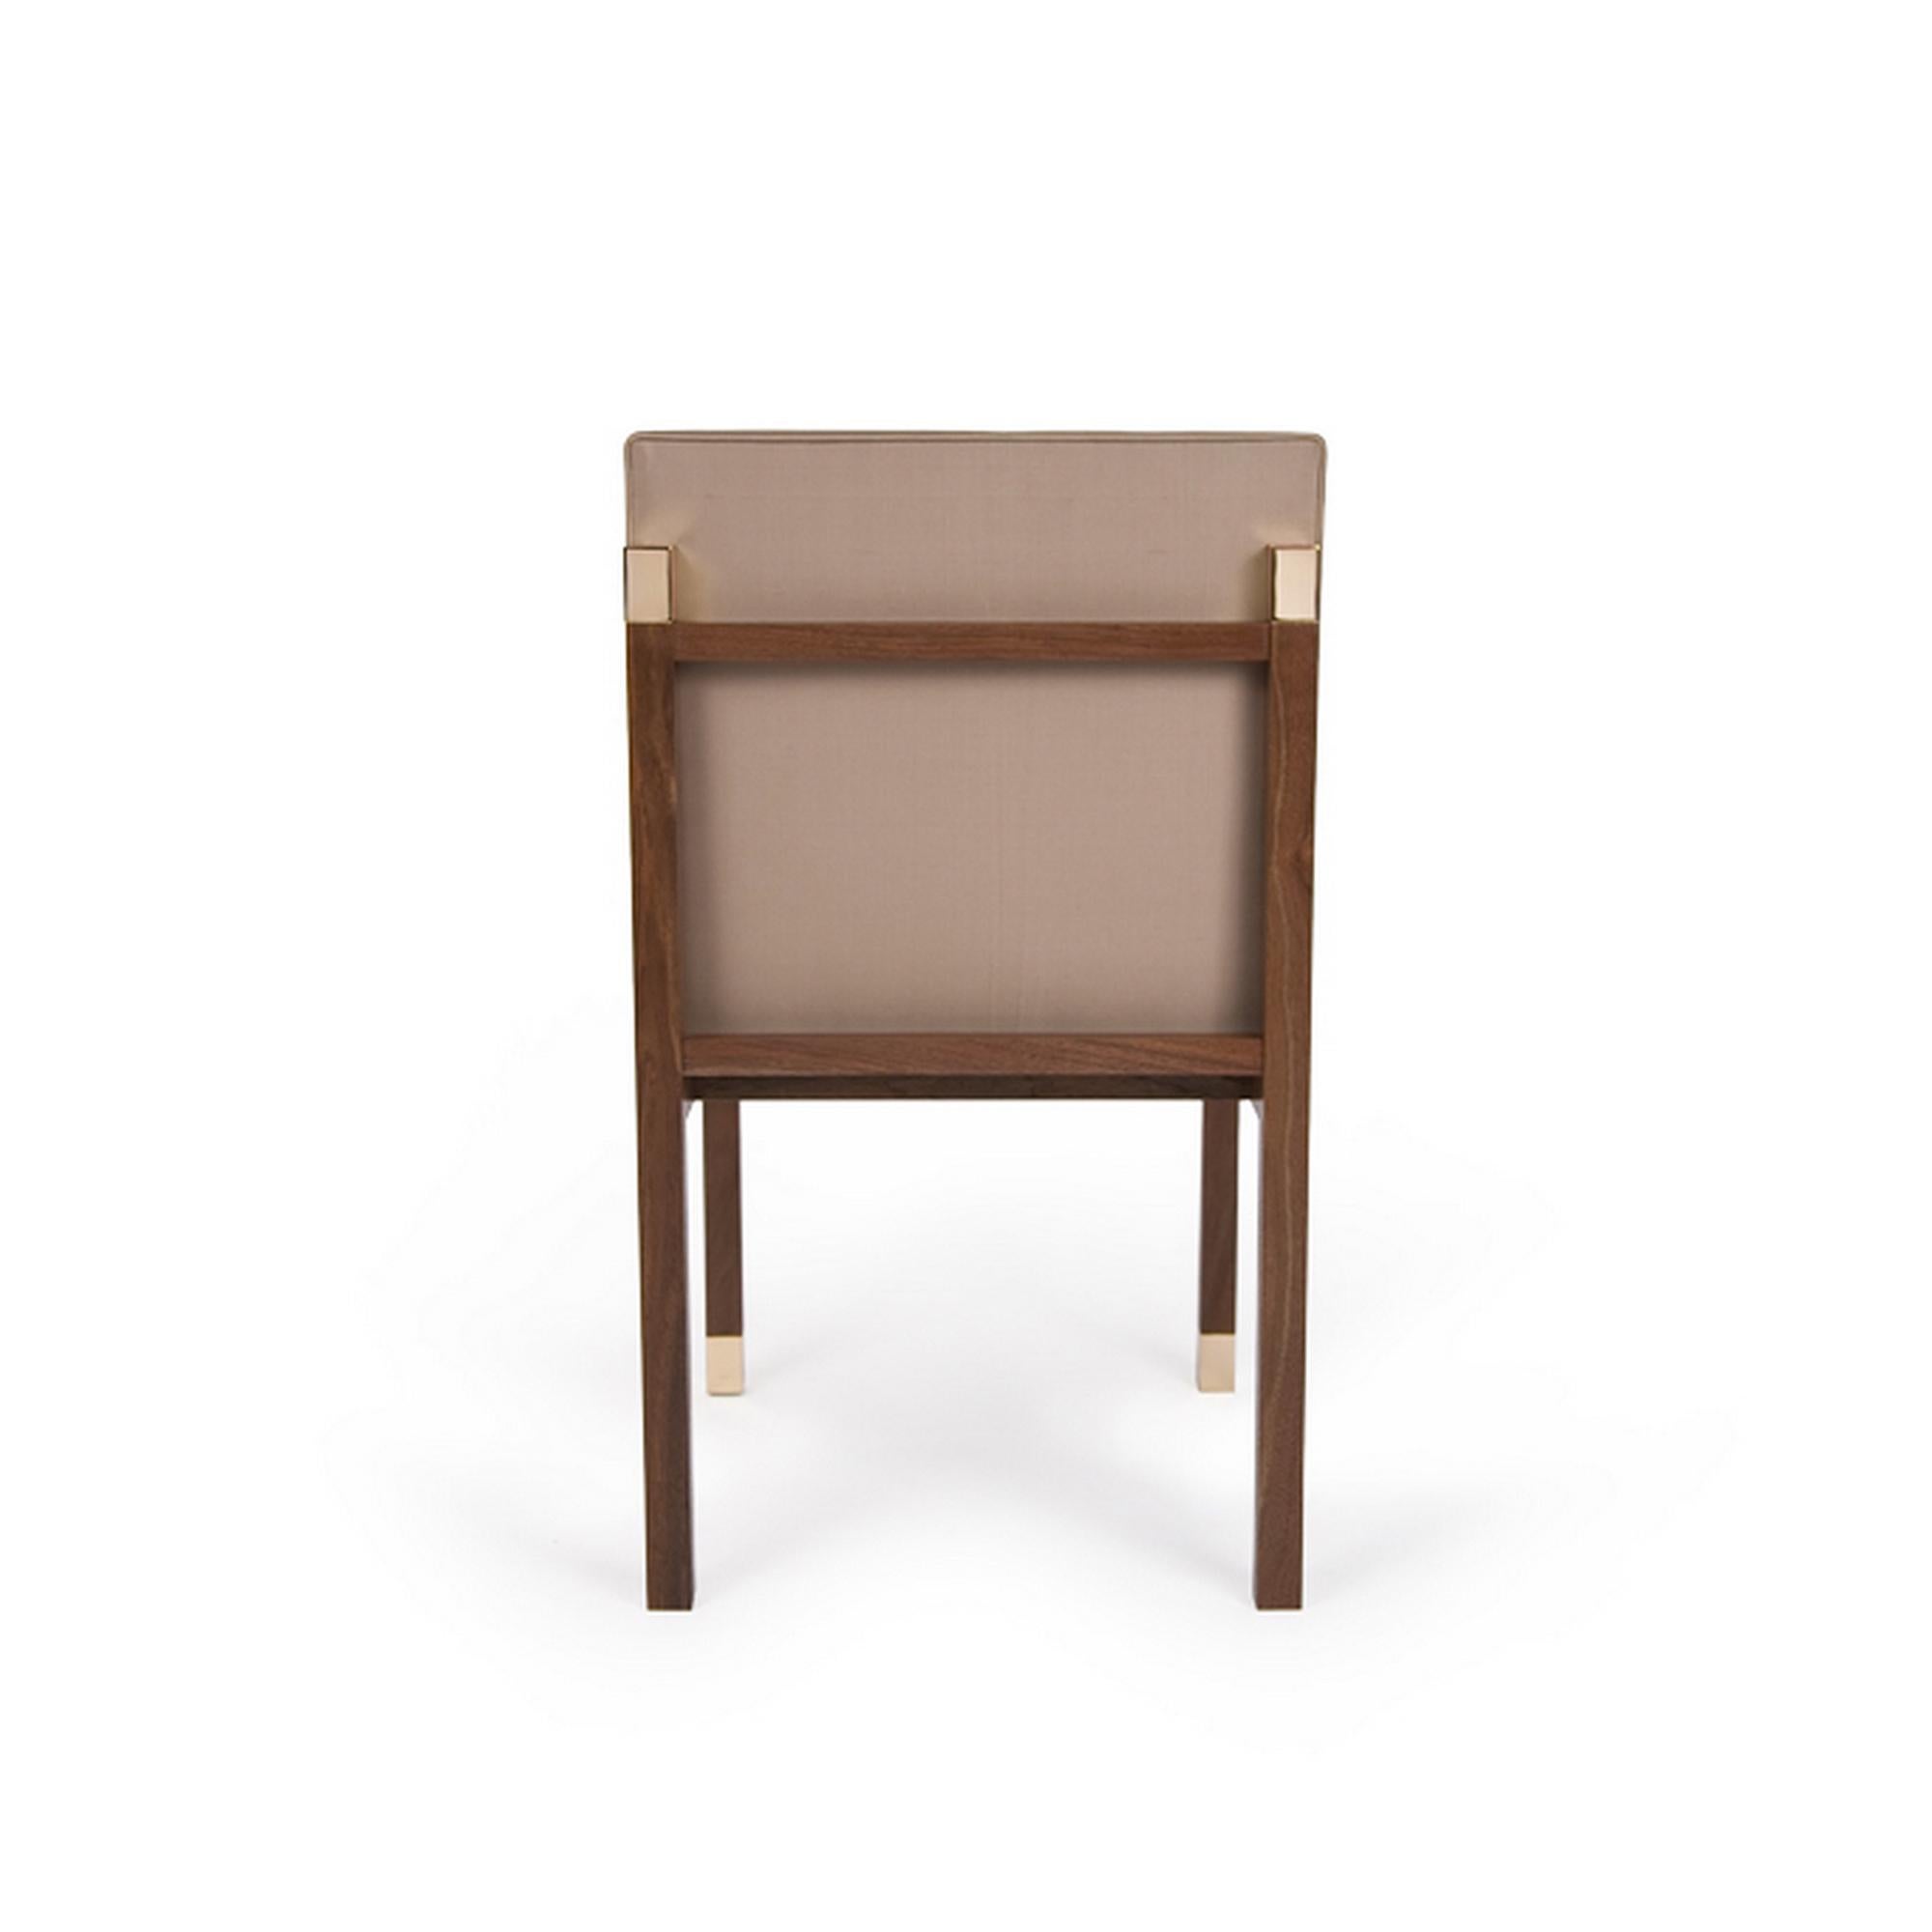 La chaise Colt illustrée ici est composée d'une base en noyer organique, avec un capuchon en bronze, et finie avec un tissu beige. Les similitudes entre le beige et le brun créent une synergie pour les chaises Colt. Veuillez noter que les tissus